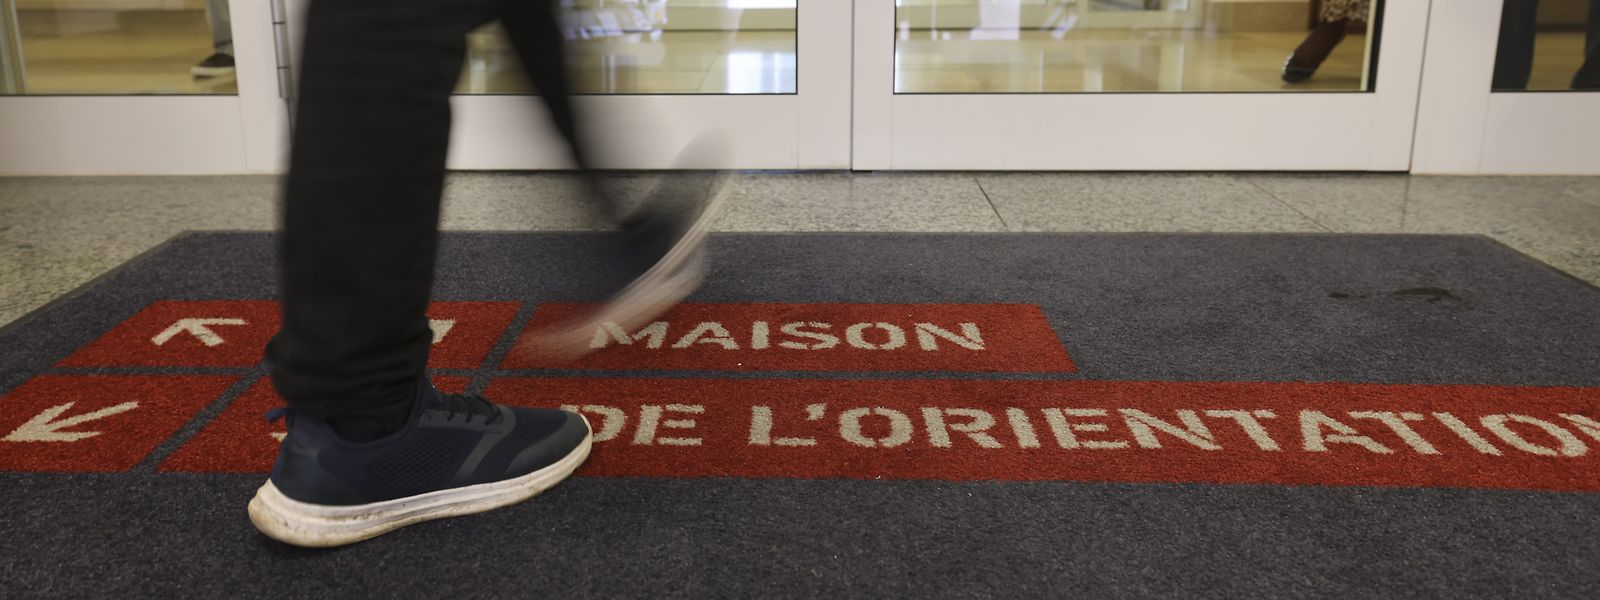 Die Maison de l'orientation ist bereits im Mai 2021 von der Stäreplaz in das ehemalige Gebäude des Bildungsministeriums in die Rue Aldringen übergesiedelt. Am Dienstag wurde am neuen Standort der „Guichet unique“ offiziell eingeweiht. 